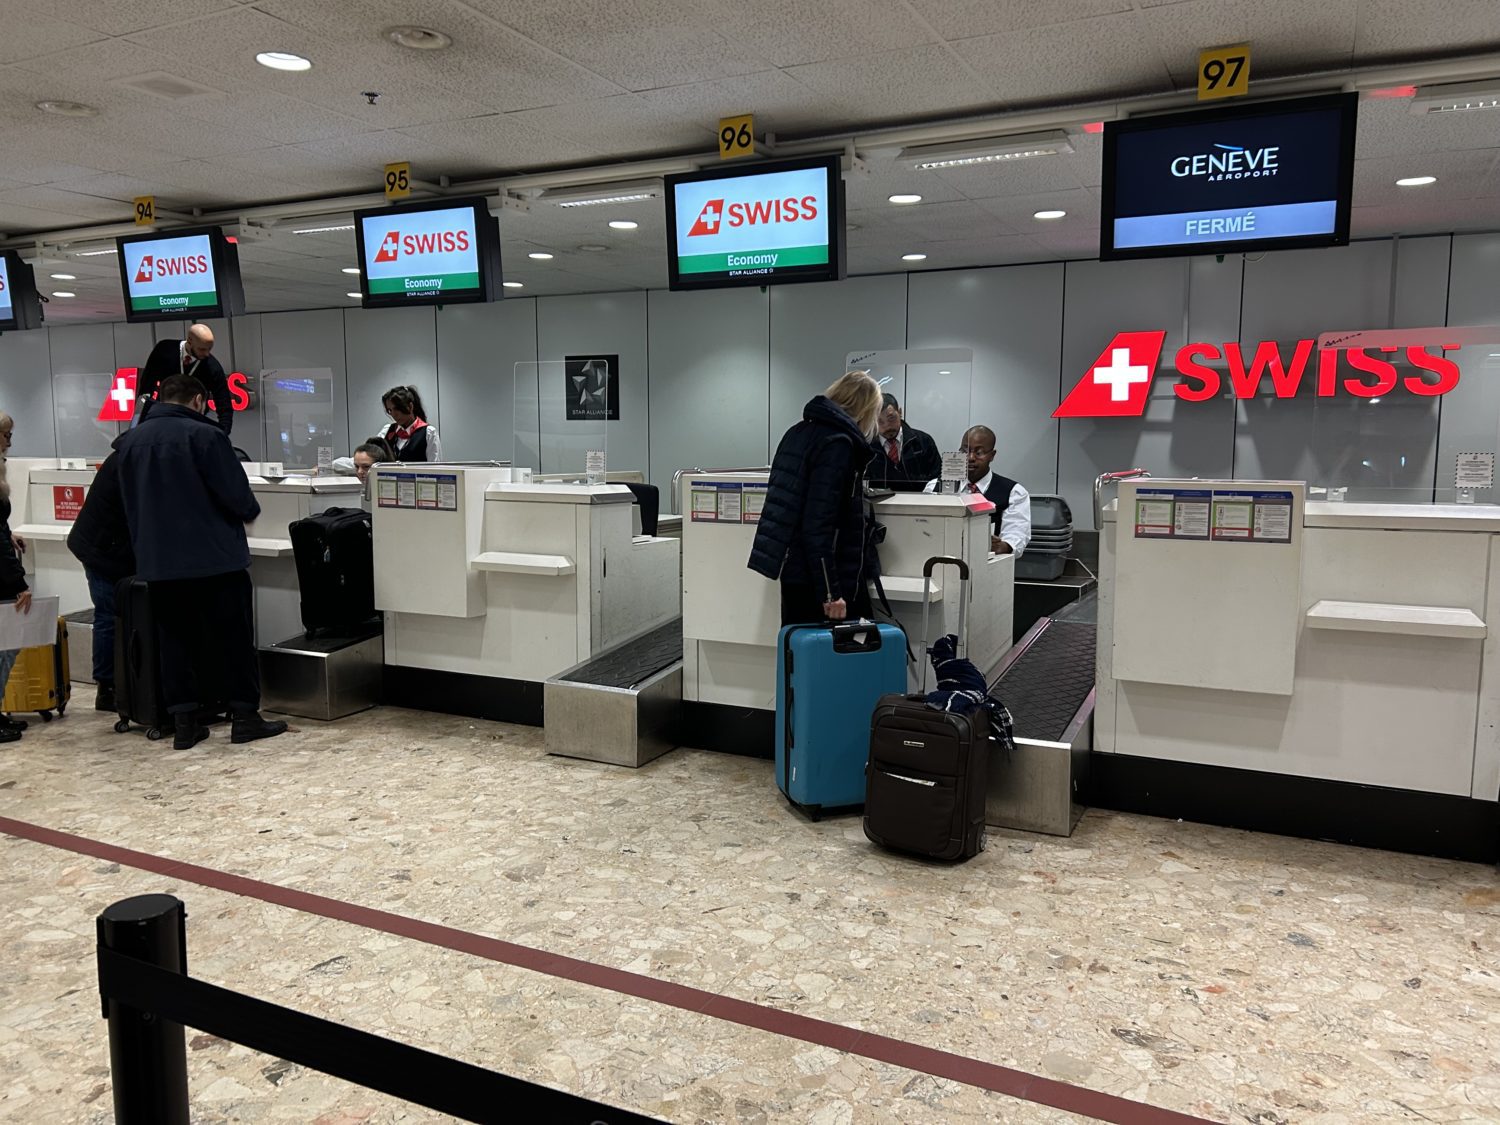 Swiss Geneva check in